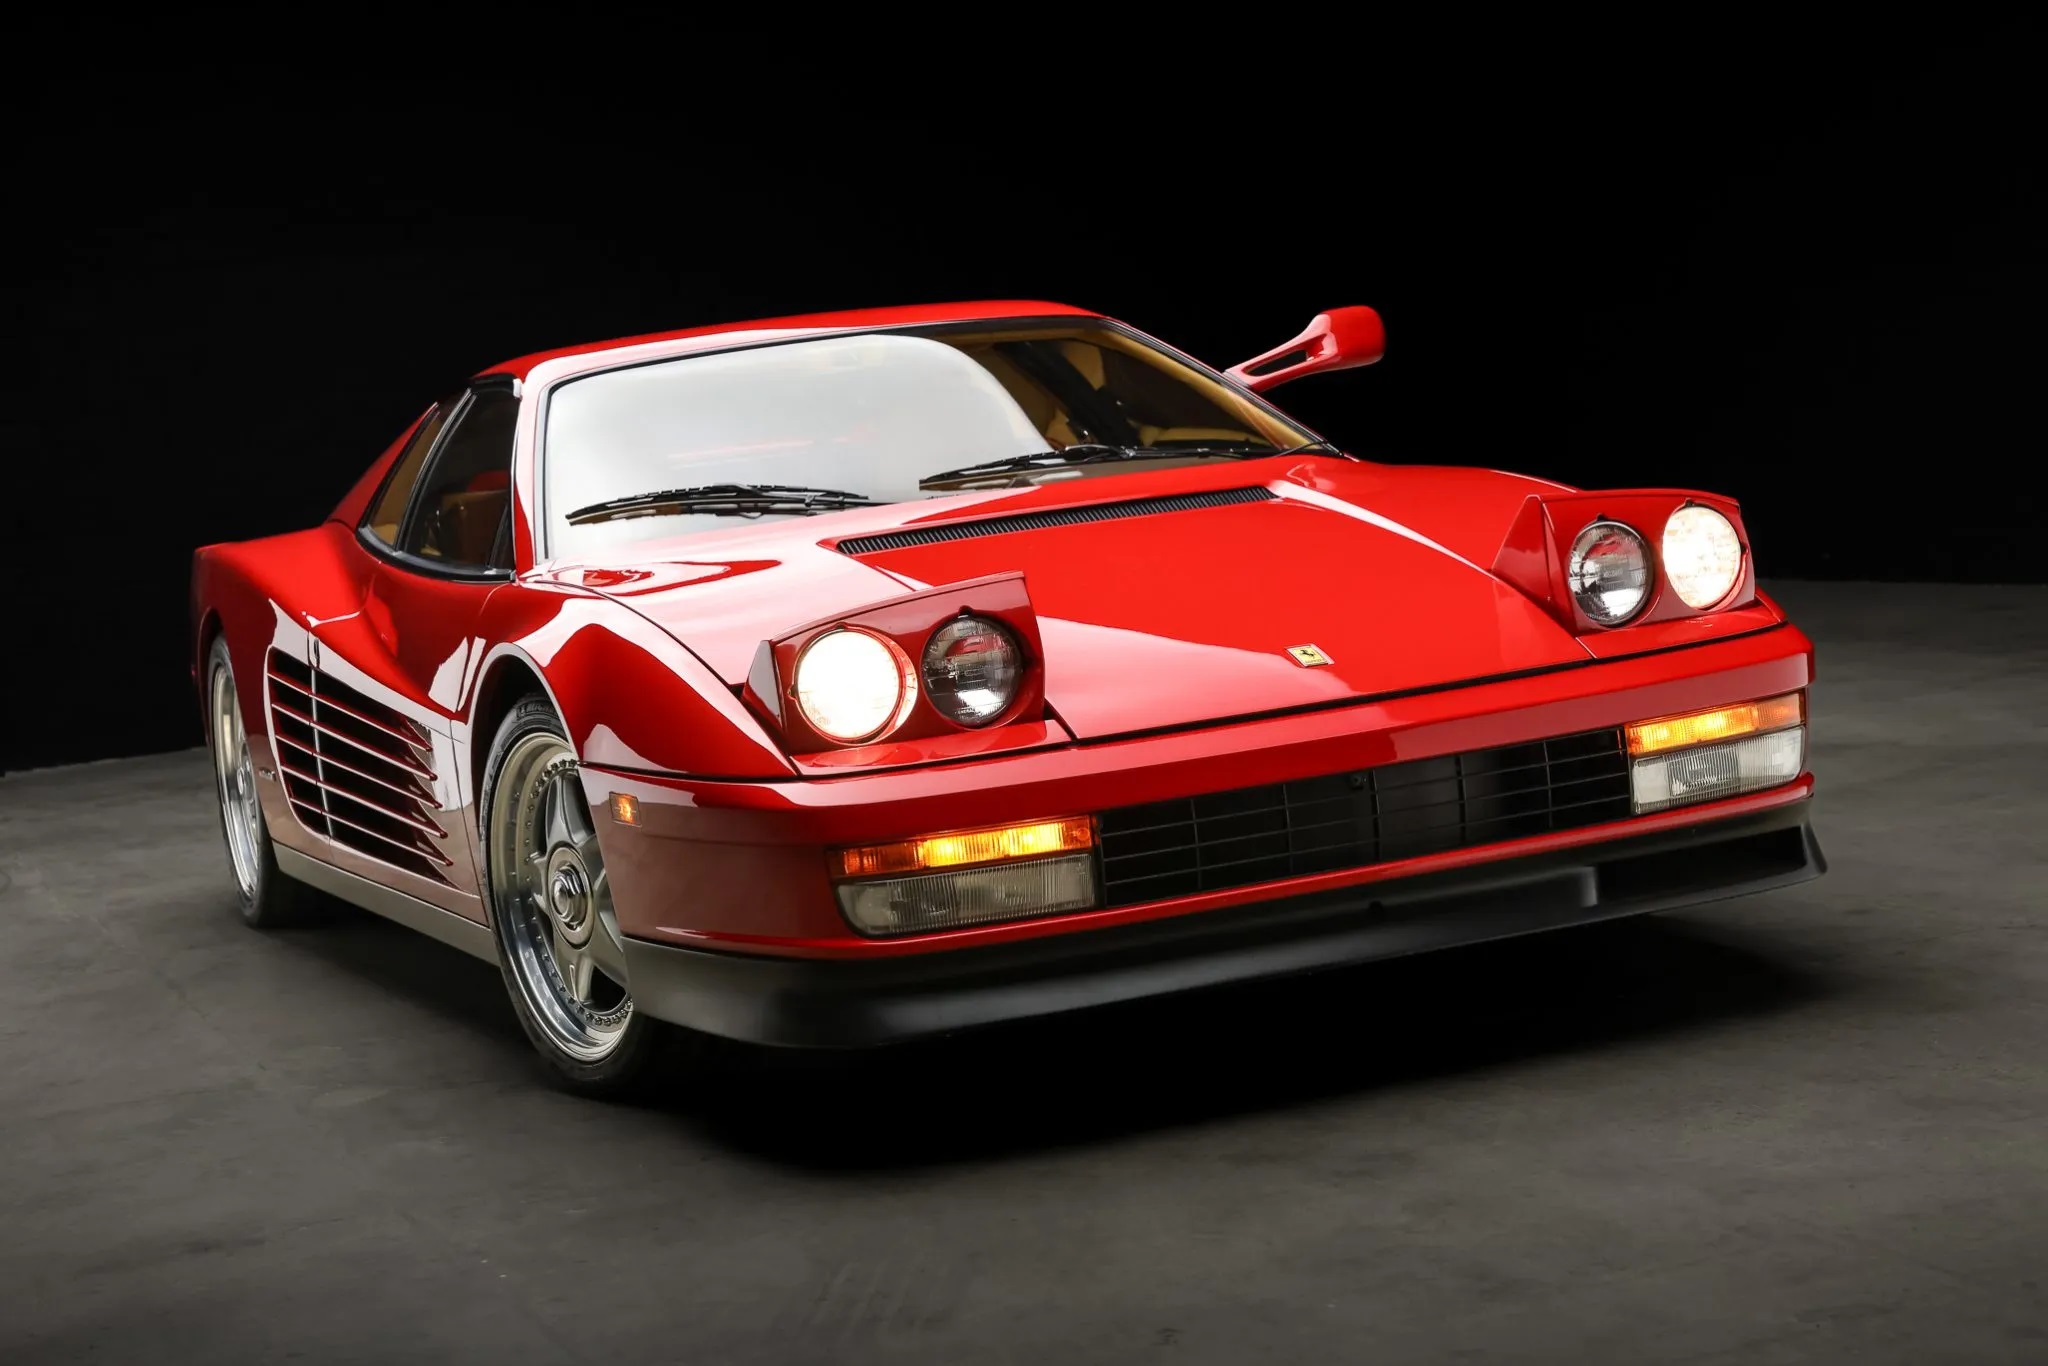  1986 Ferrari Testarossa